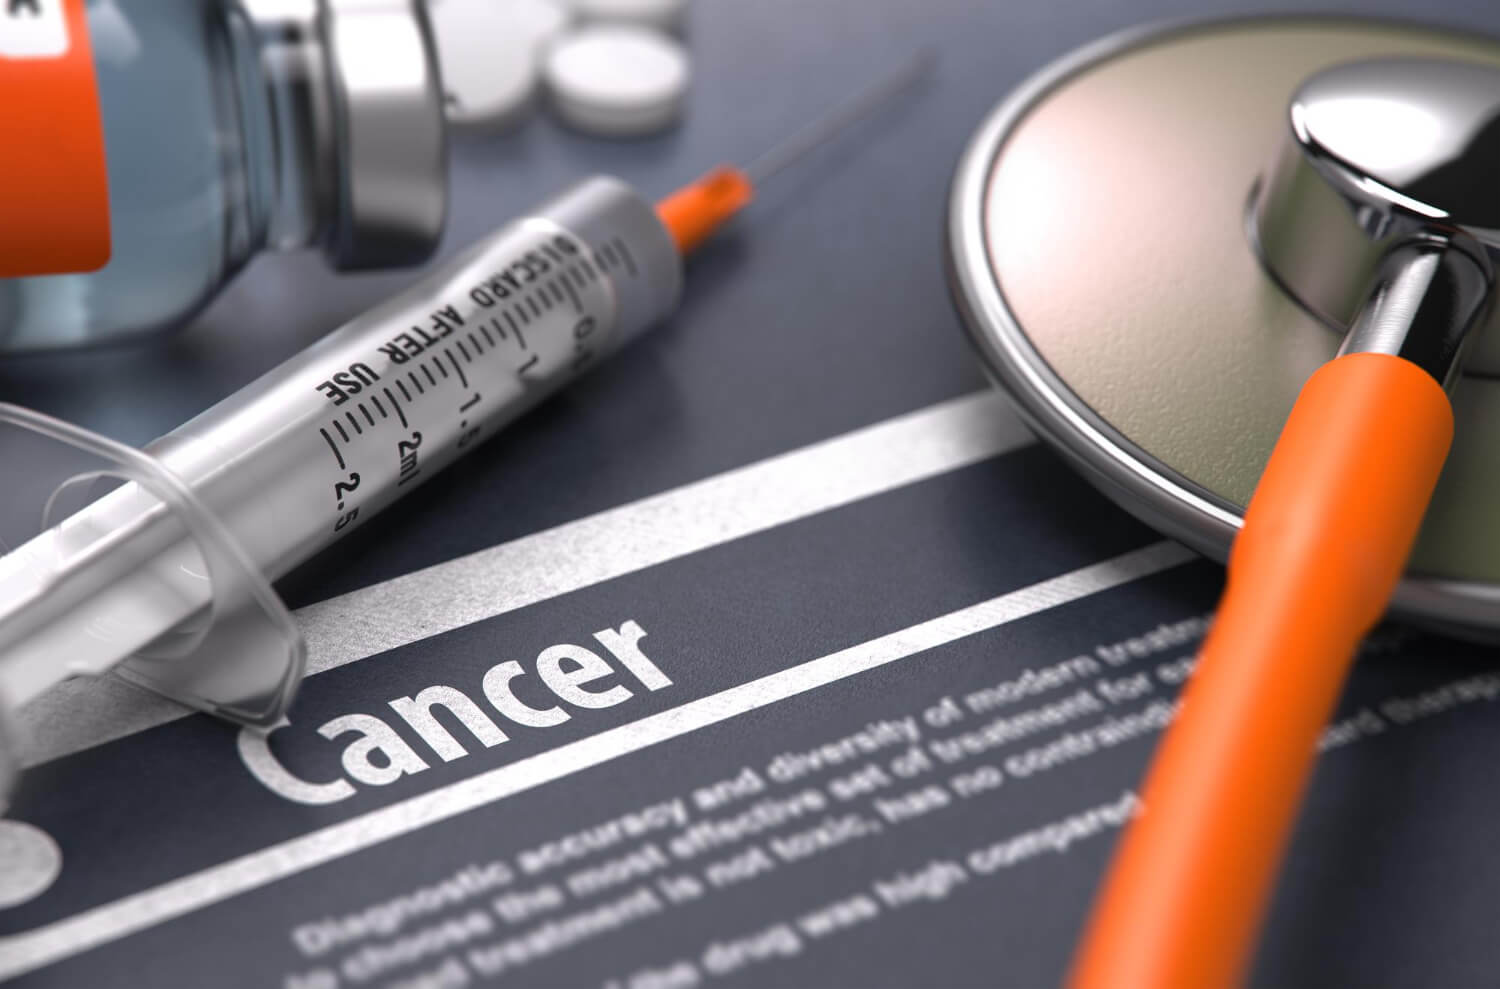 Planos de saúde são obrigados a custear medicação de alto custo para tratamento de câncer